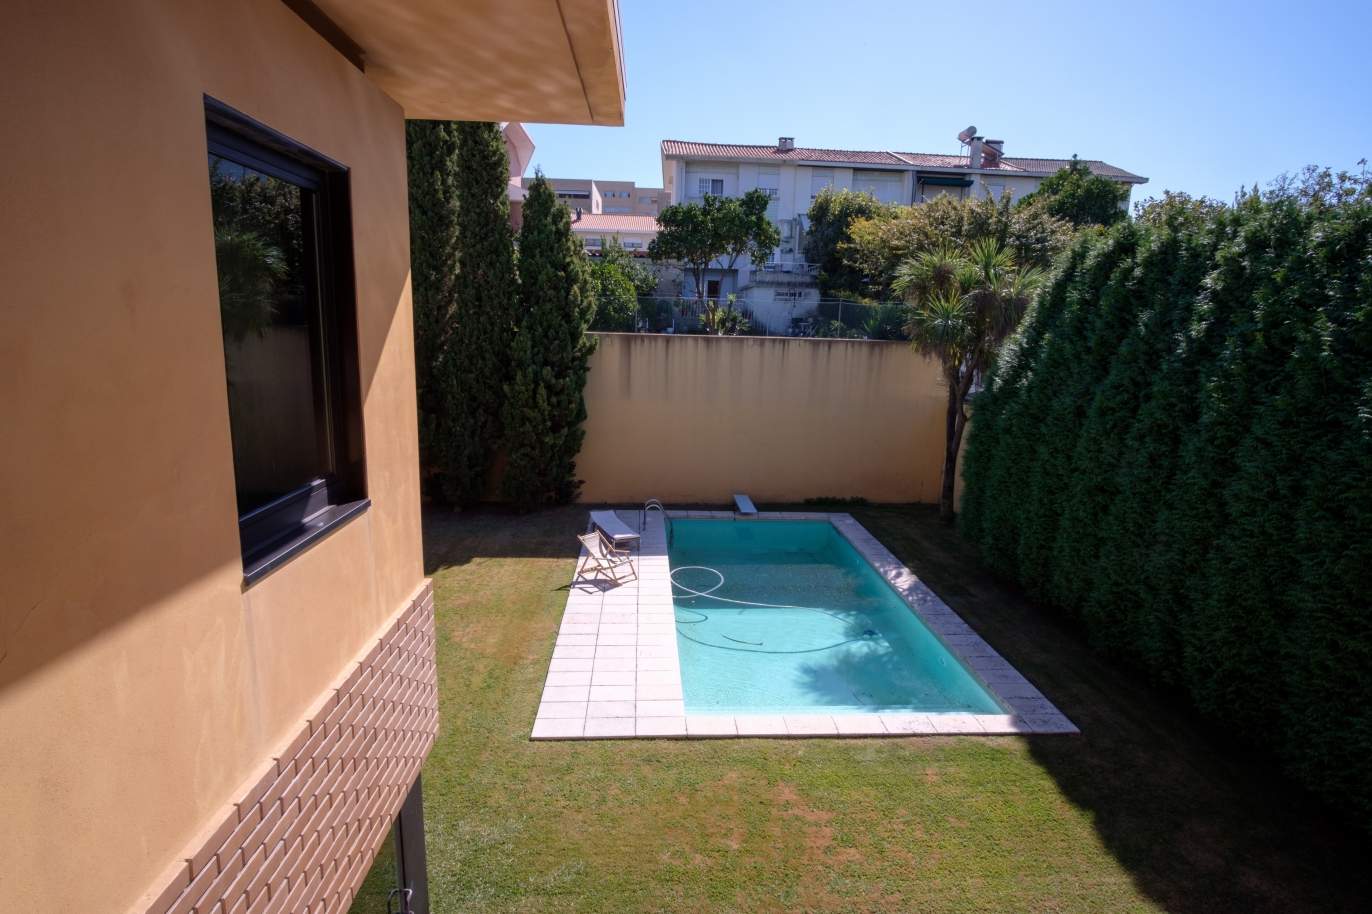 Venta de villa de 4 frentes con piscina y jardín, S. Mamede Infesta_118966